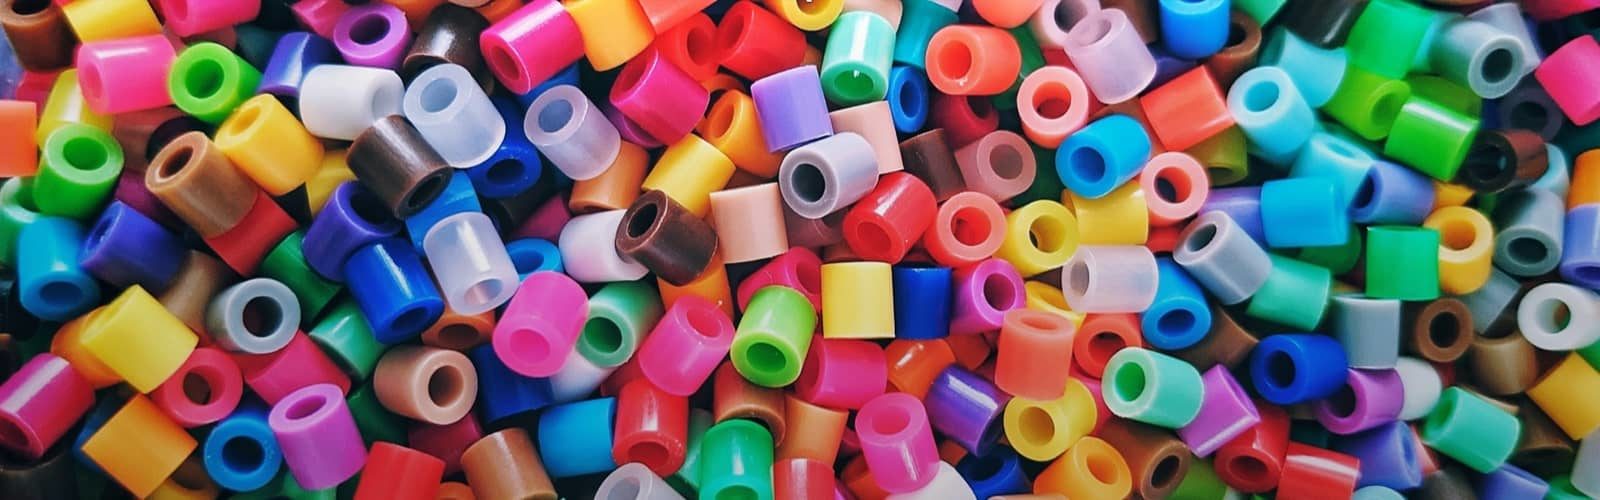 Multicolor plastic pieces footer